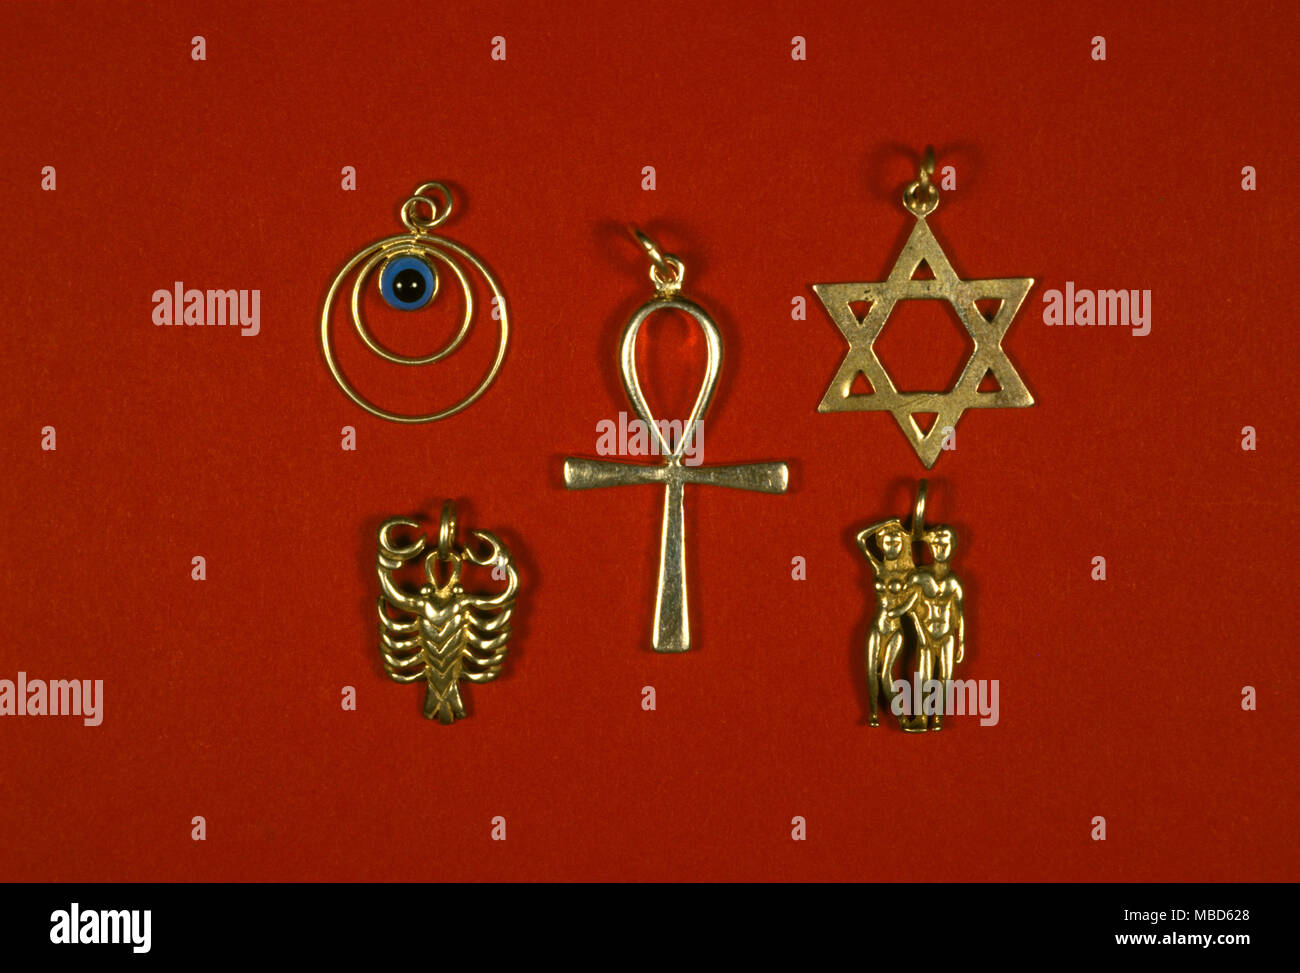 Amuleti collezione di amuleti da una varietà di fonti, tra cui la Stella di David (in alto a destra) il ankh (centro) e il Greco occhio (in alto a destra) Collezione privata Foto Stock